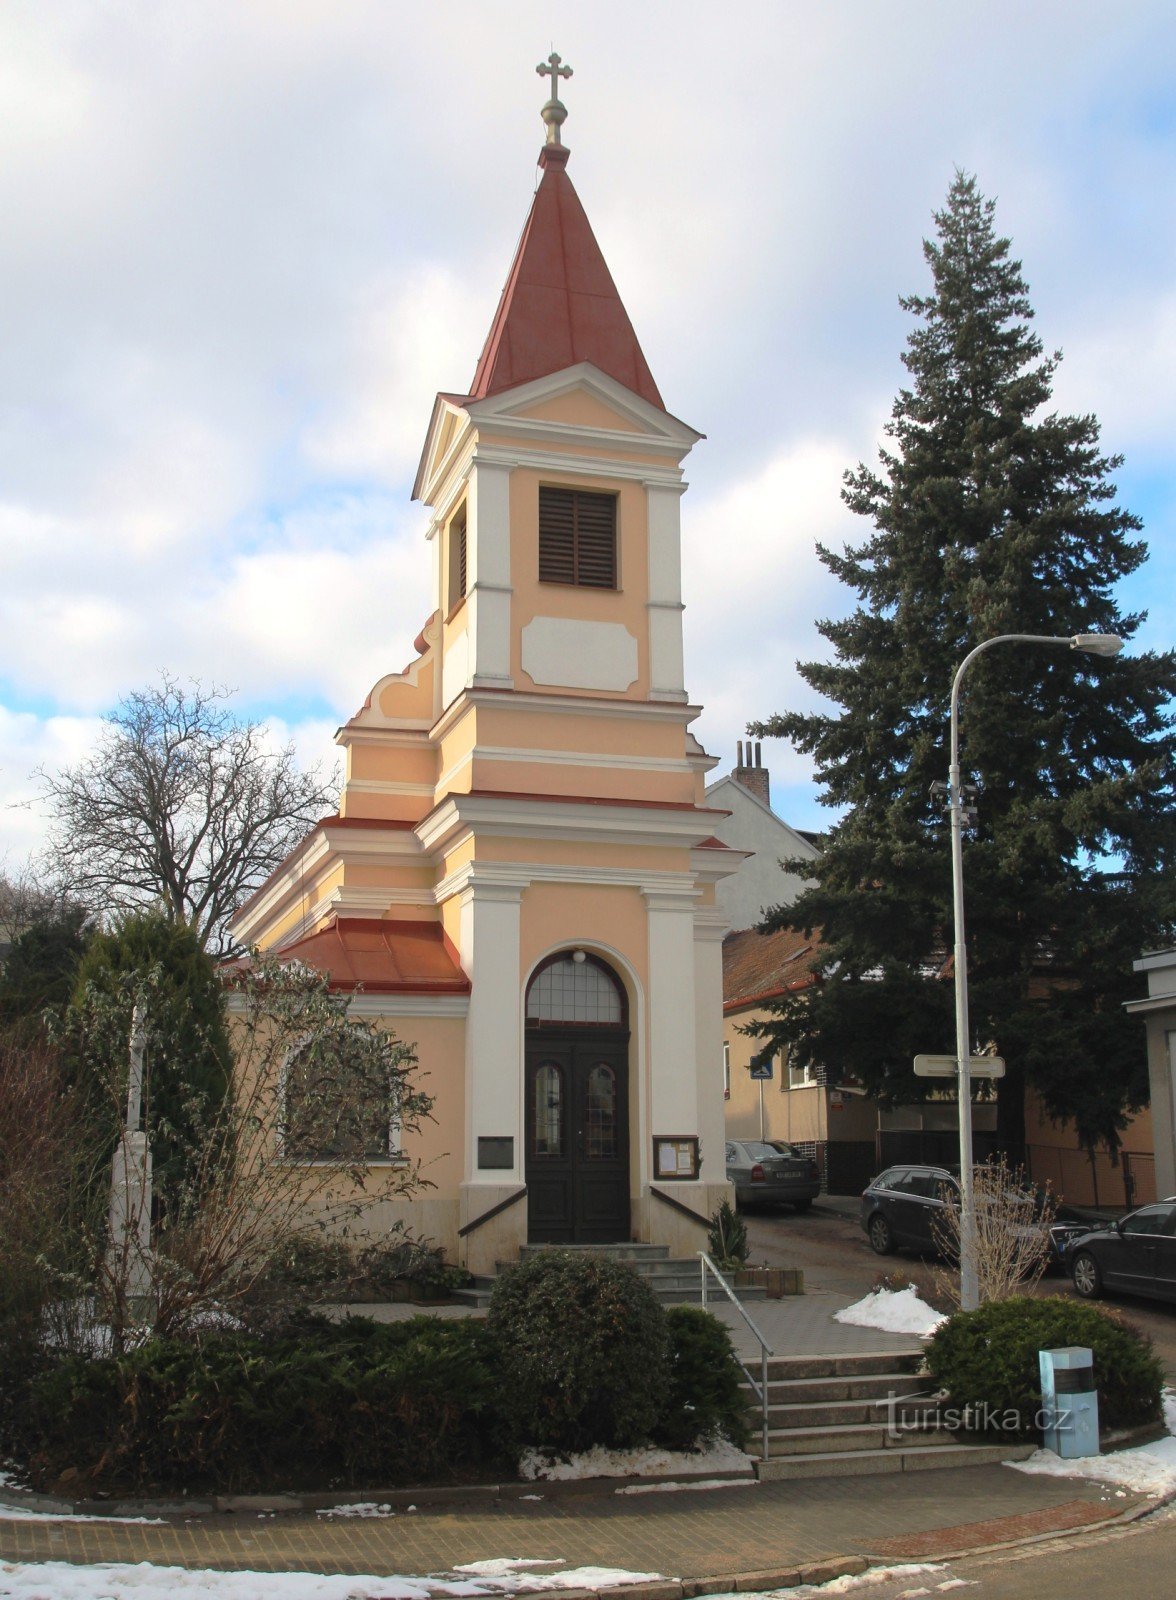 Brno-Kohoutovice - nhà nguyện của St. Các gia đình